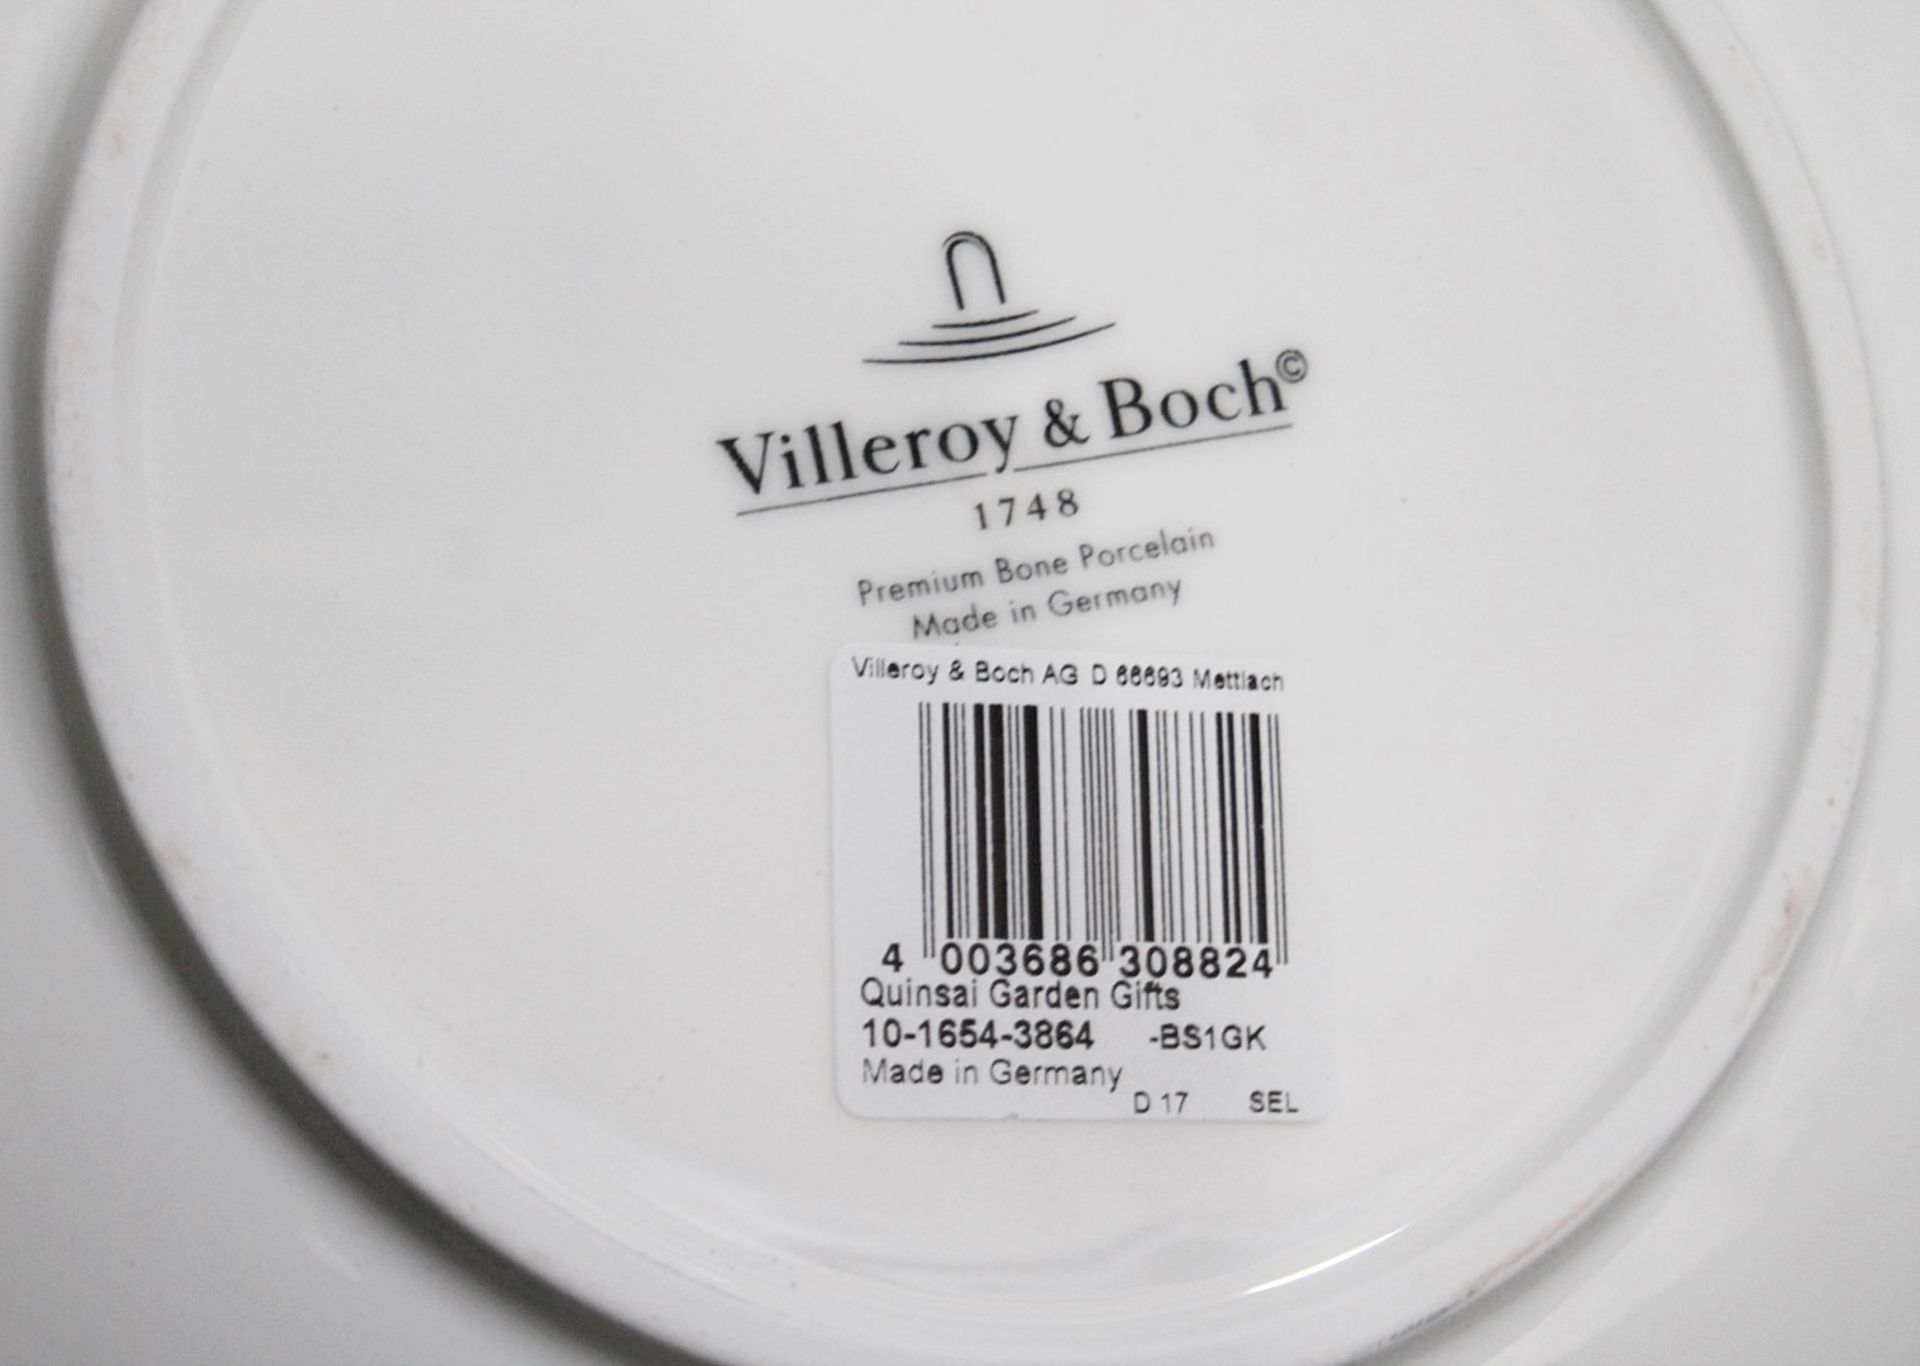 1 x VILLEROY & BOCH SIGNATURE - Premium Bone Porcelain 'Quinsai Garden' Fruit Bowl - RRP £238.00 - Image 2 of 7